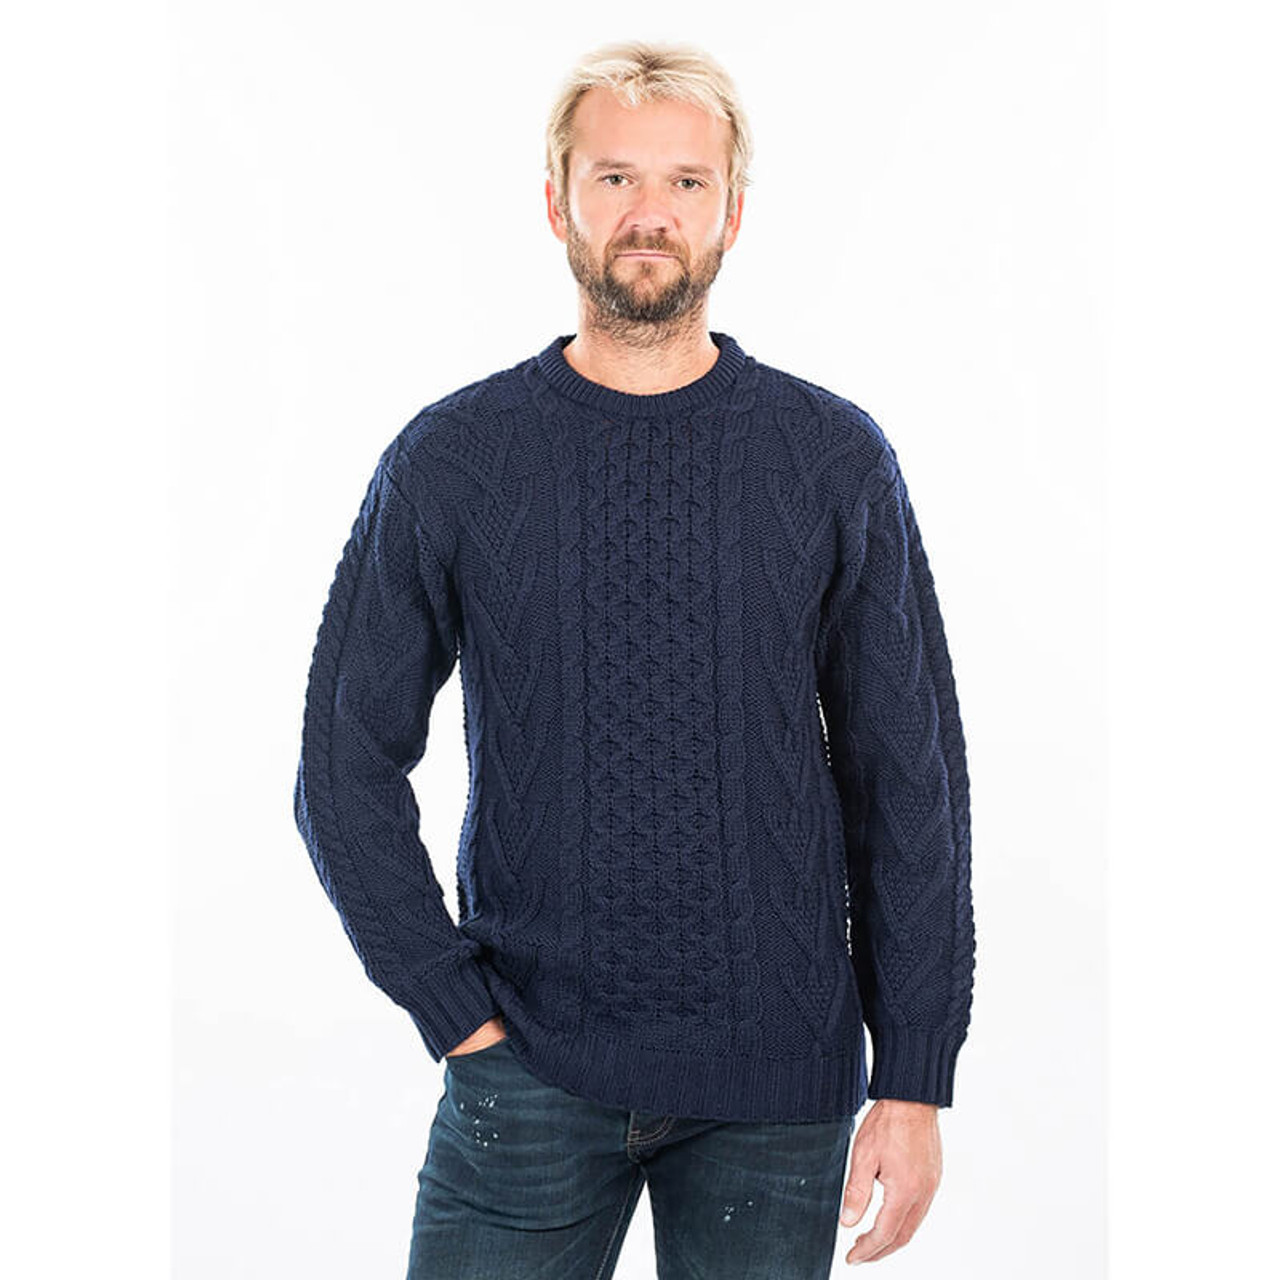 SAOL Irish Sweater for Men's Made of 100% Merino Wool -Ireland